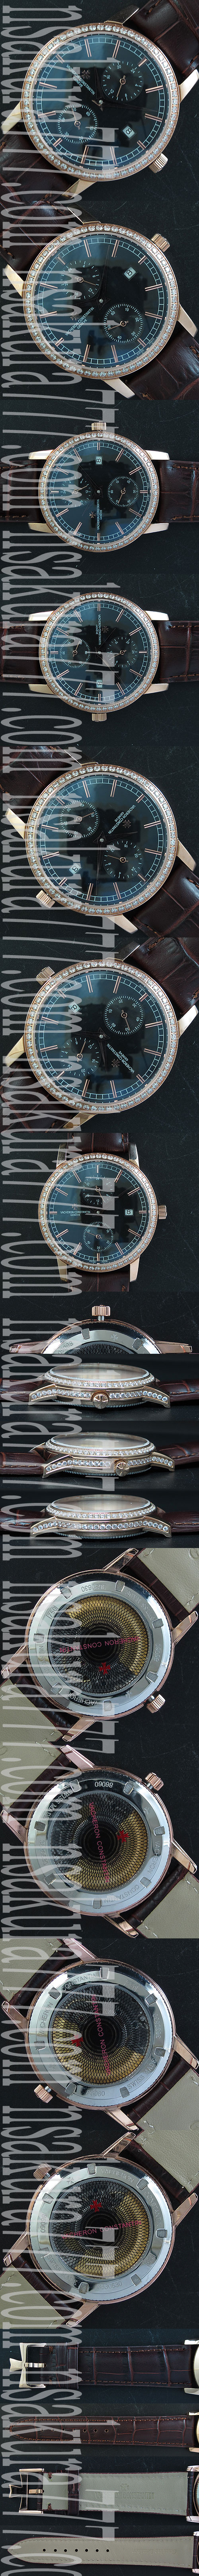 レプリカ時計バセロン コンスタンチン パトリモニートラディショナル， Asian ETAムーブ搭載 - ウインドウを閉じる